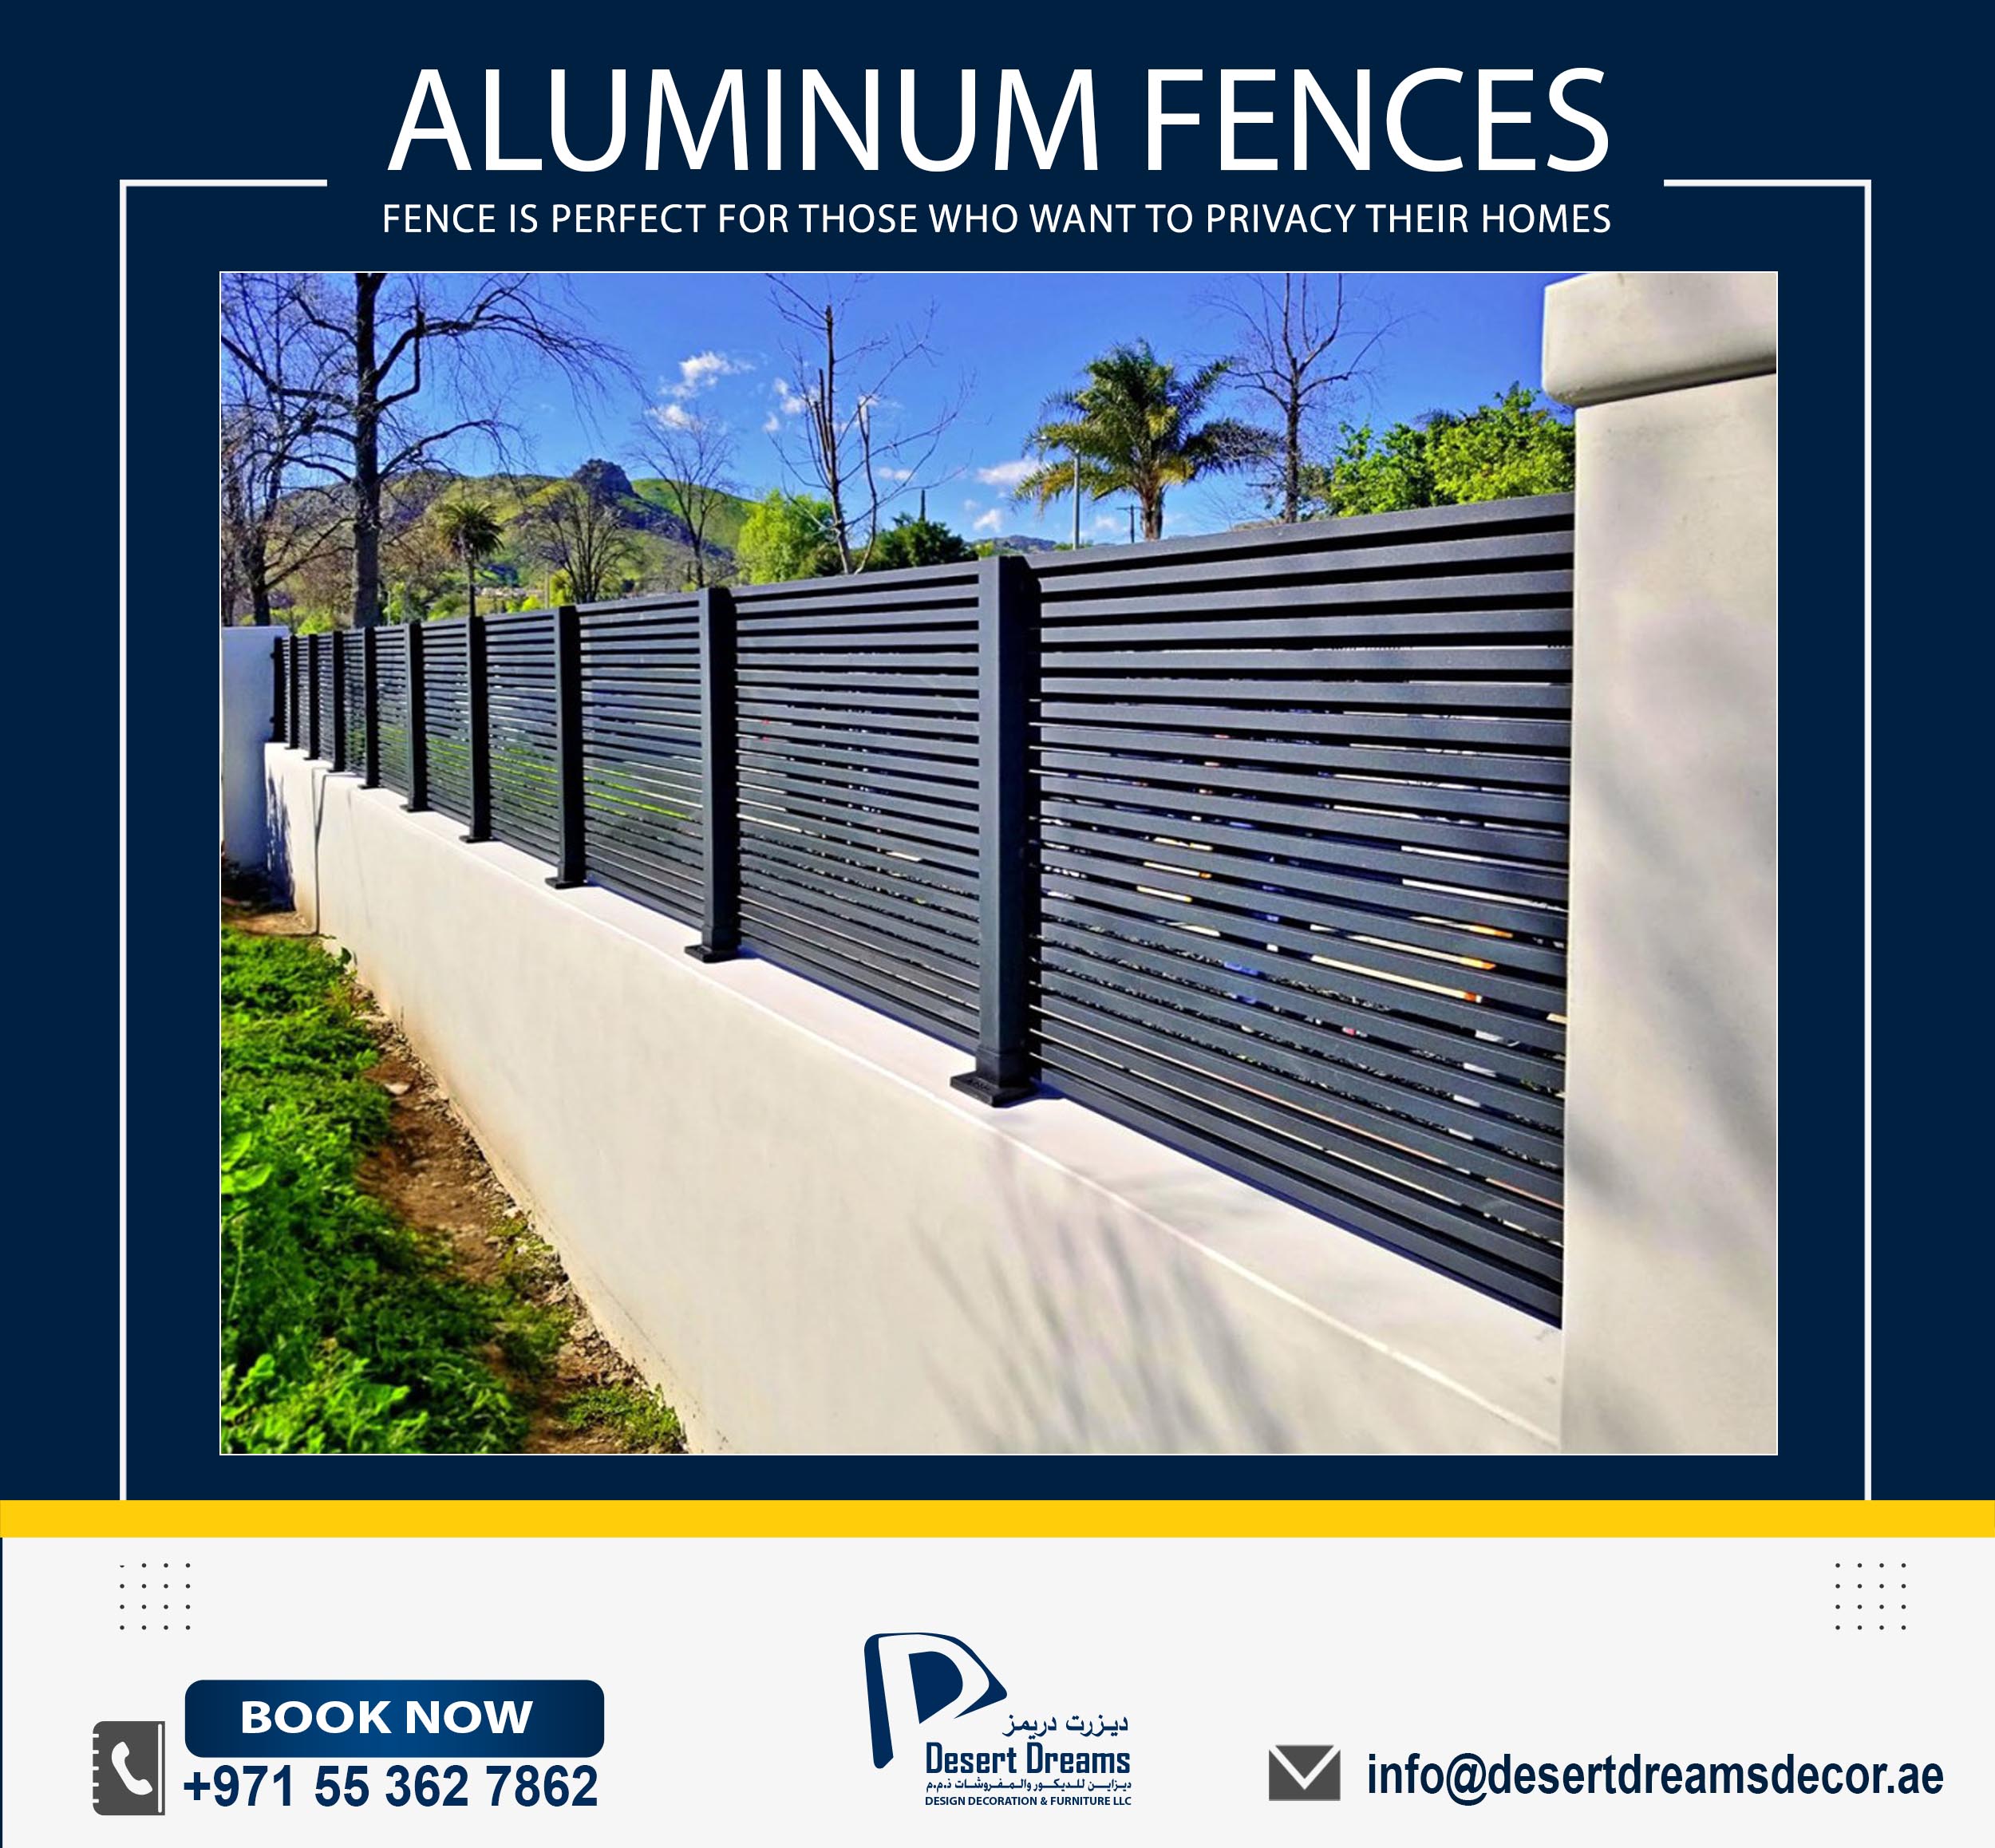 Aluminum Fences Suppliers in Uae_Aluminum Slatted Fences Dubai (1).jpg